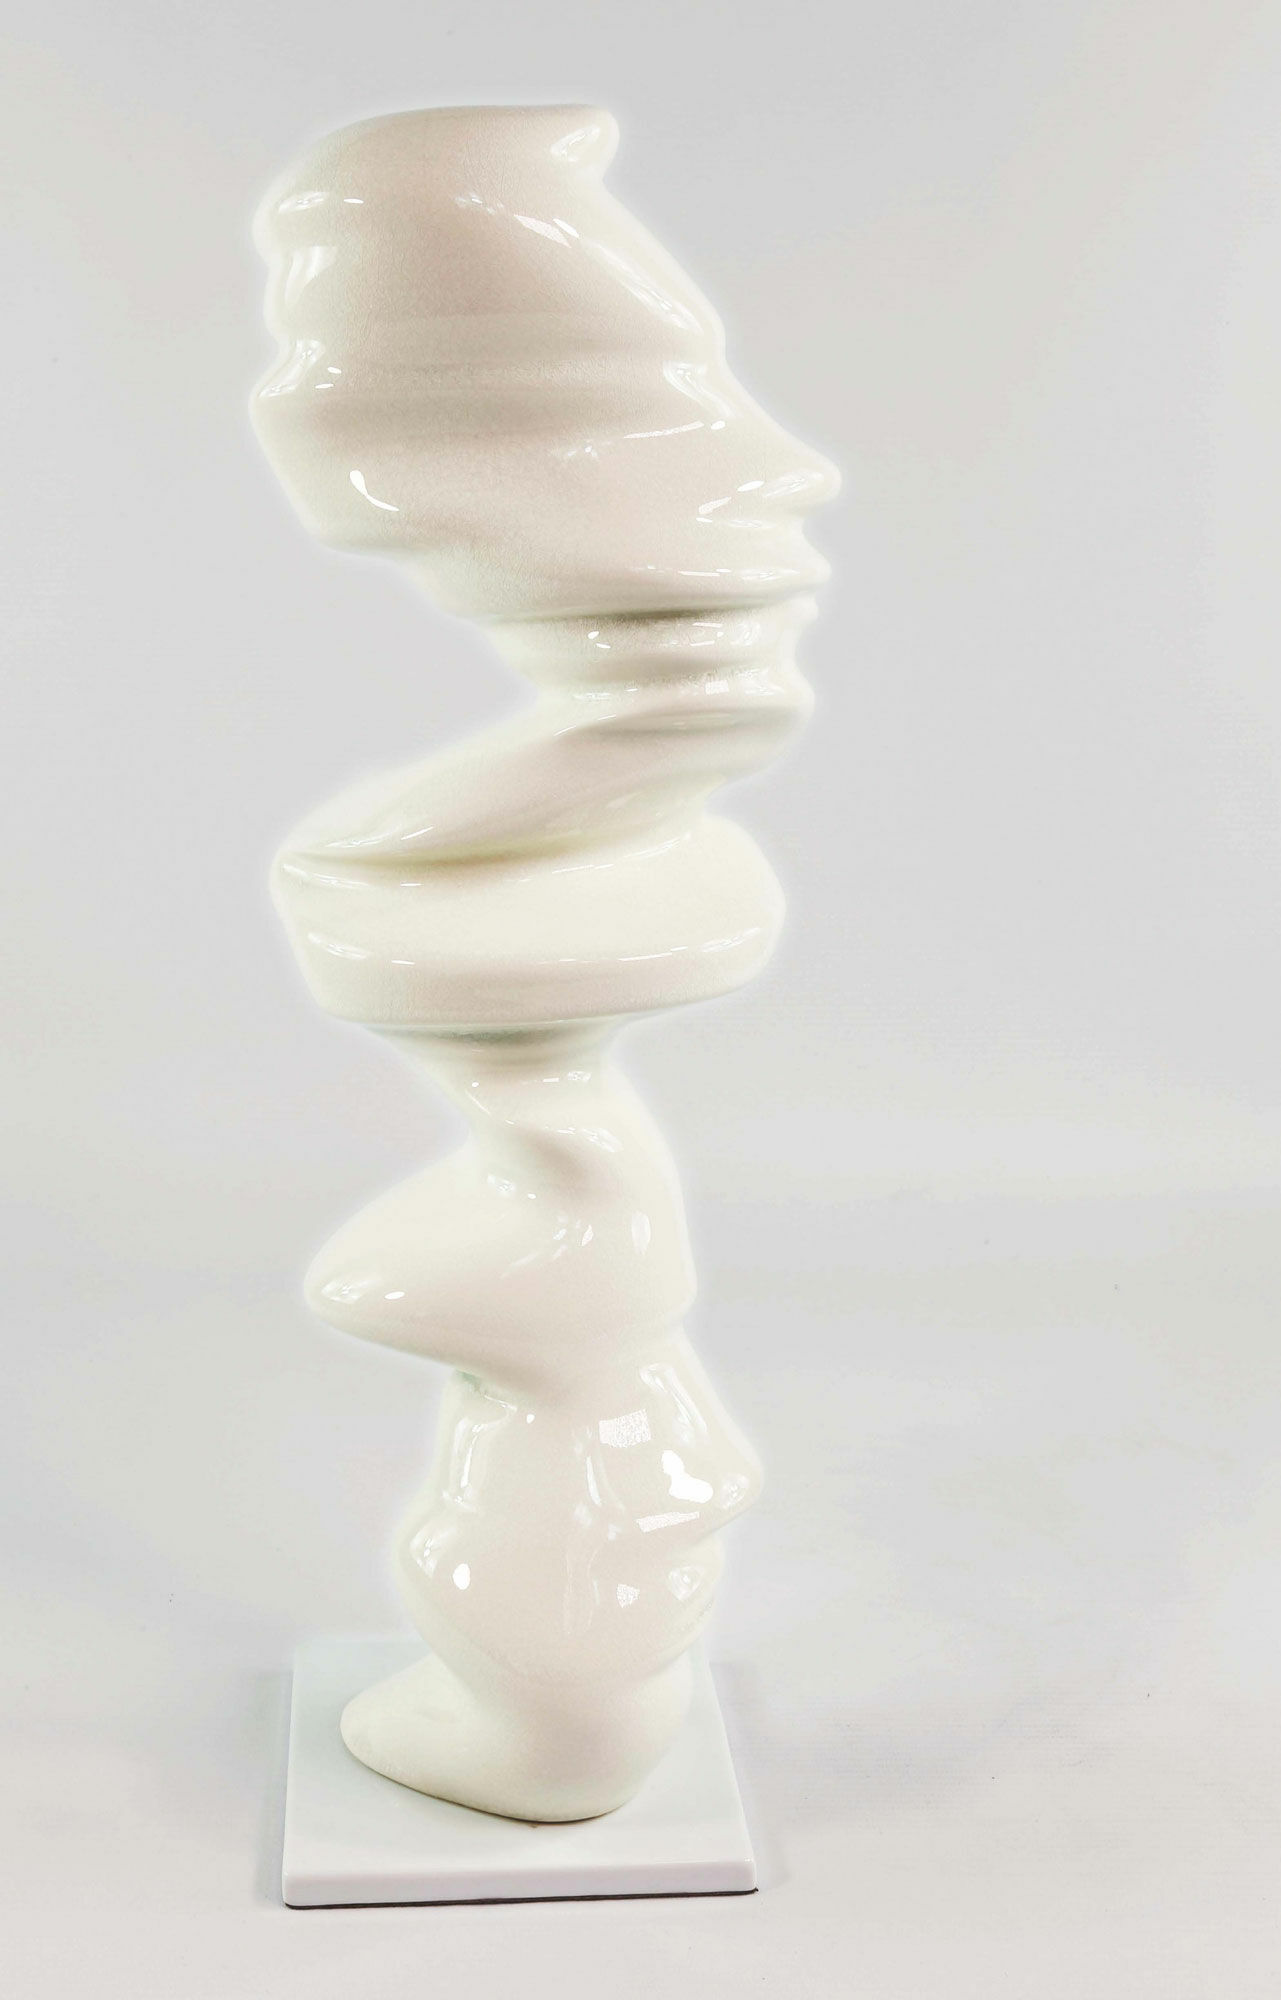 Skulptur "Points of View" (2013), Porzellan von Tony Cragg